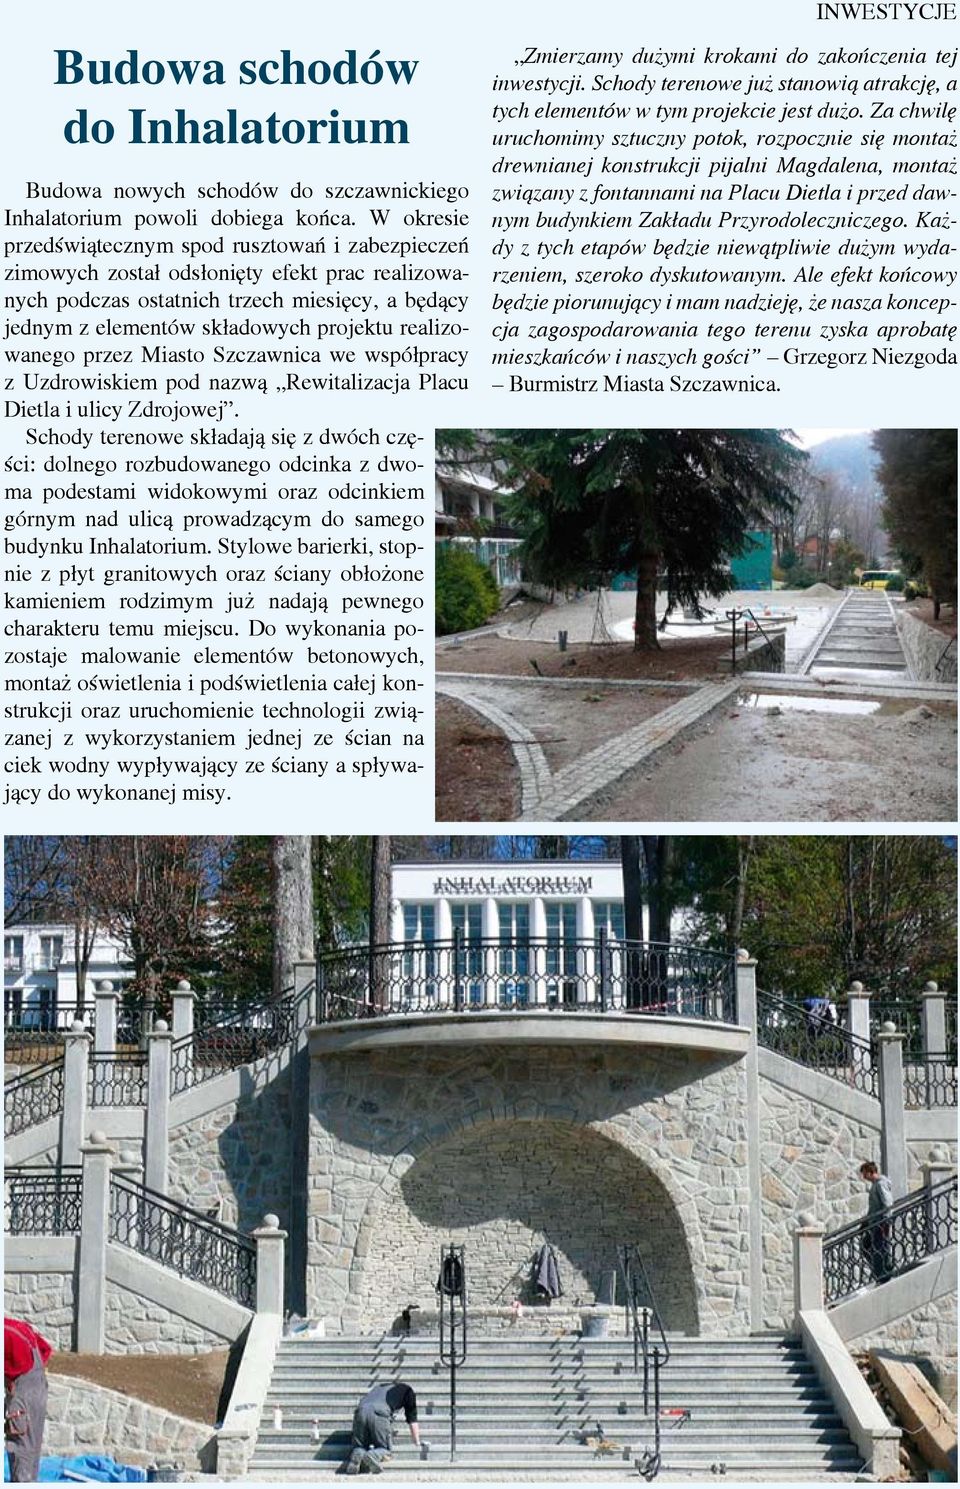 realizowanego przez Miasto Szczawnica we współpracy z Uzdrowiskiem pod nazwą Rewitalizacja Placu Dietla i ulicy Zdrojowej.